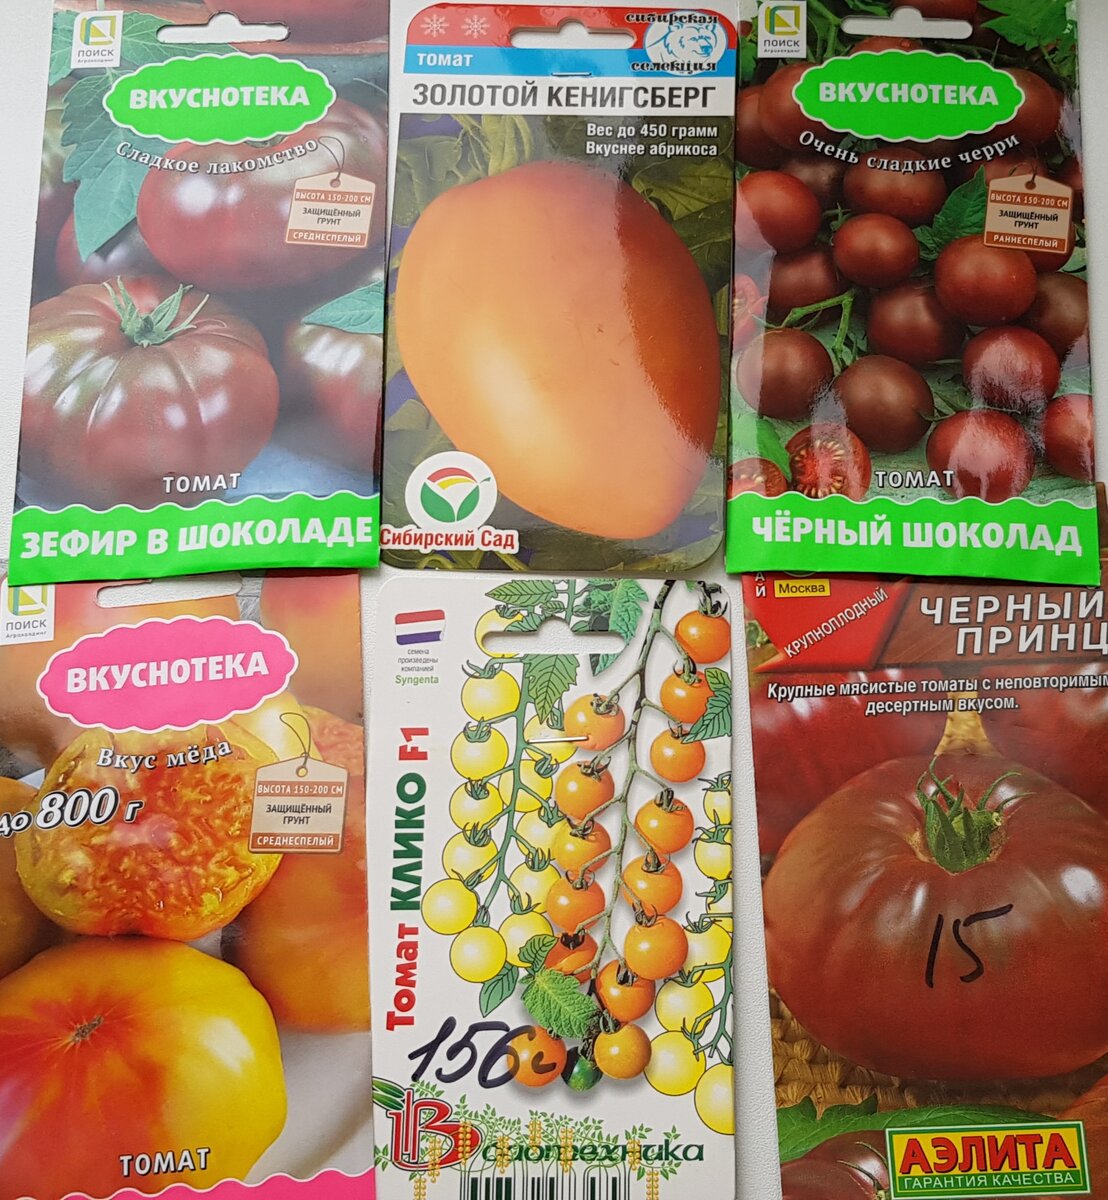 Какие томаты я буду сажать в этом году. Выбрала самые вкусные, сладкие ихвалёные сорта